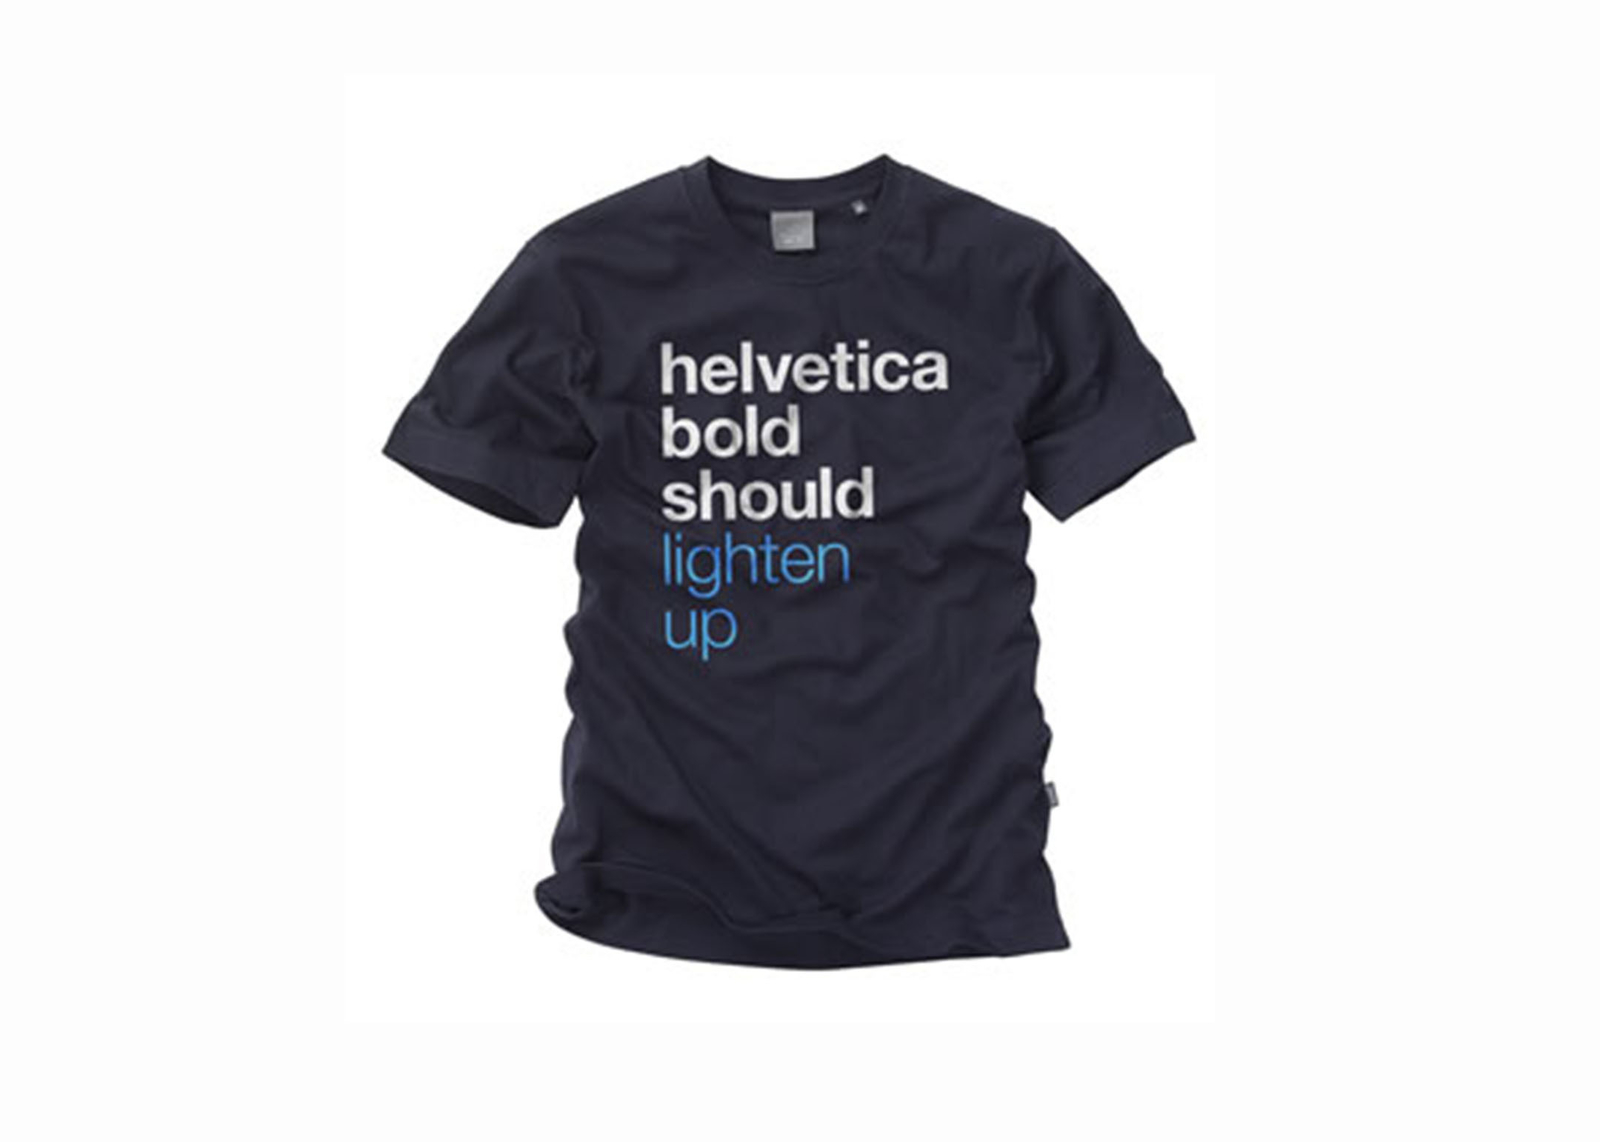 Helvetica tshirt